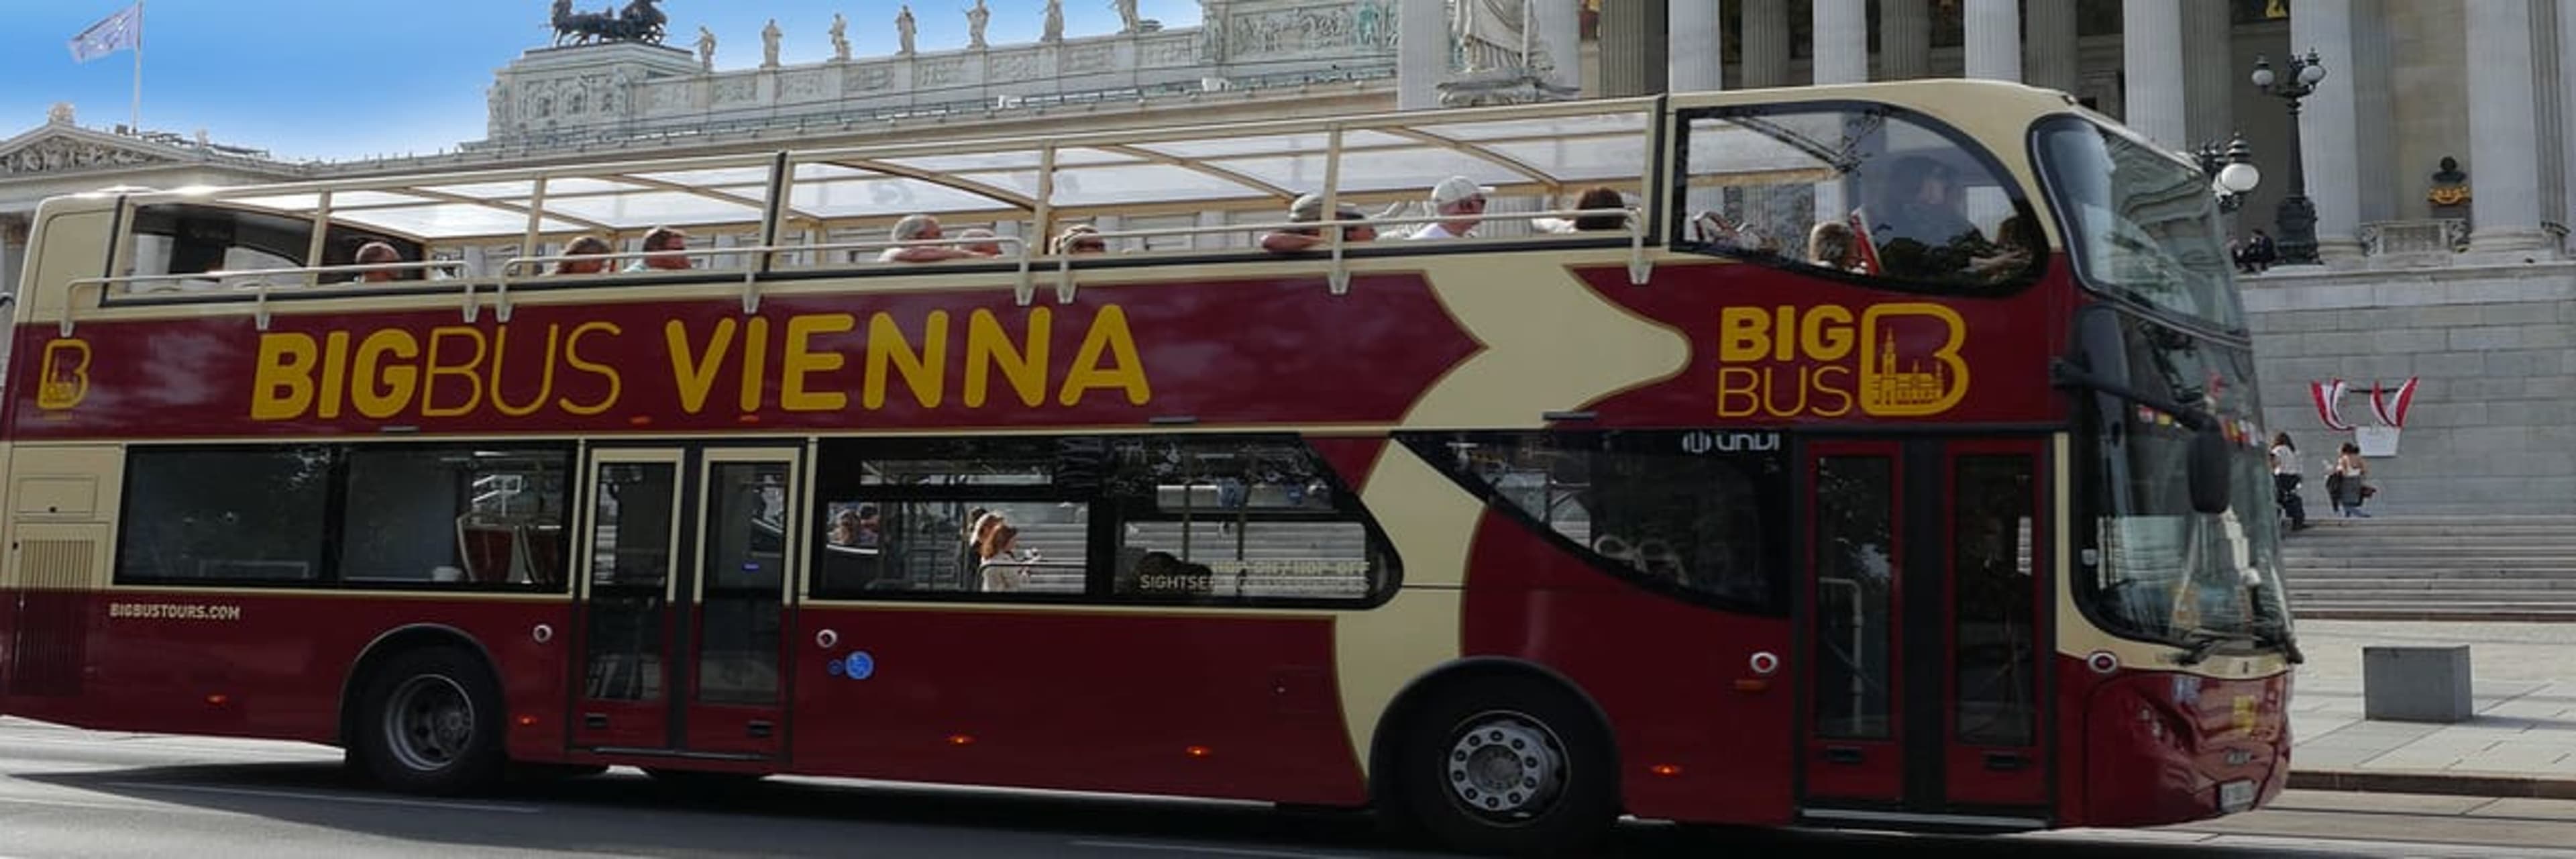 Big bus Vienna